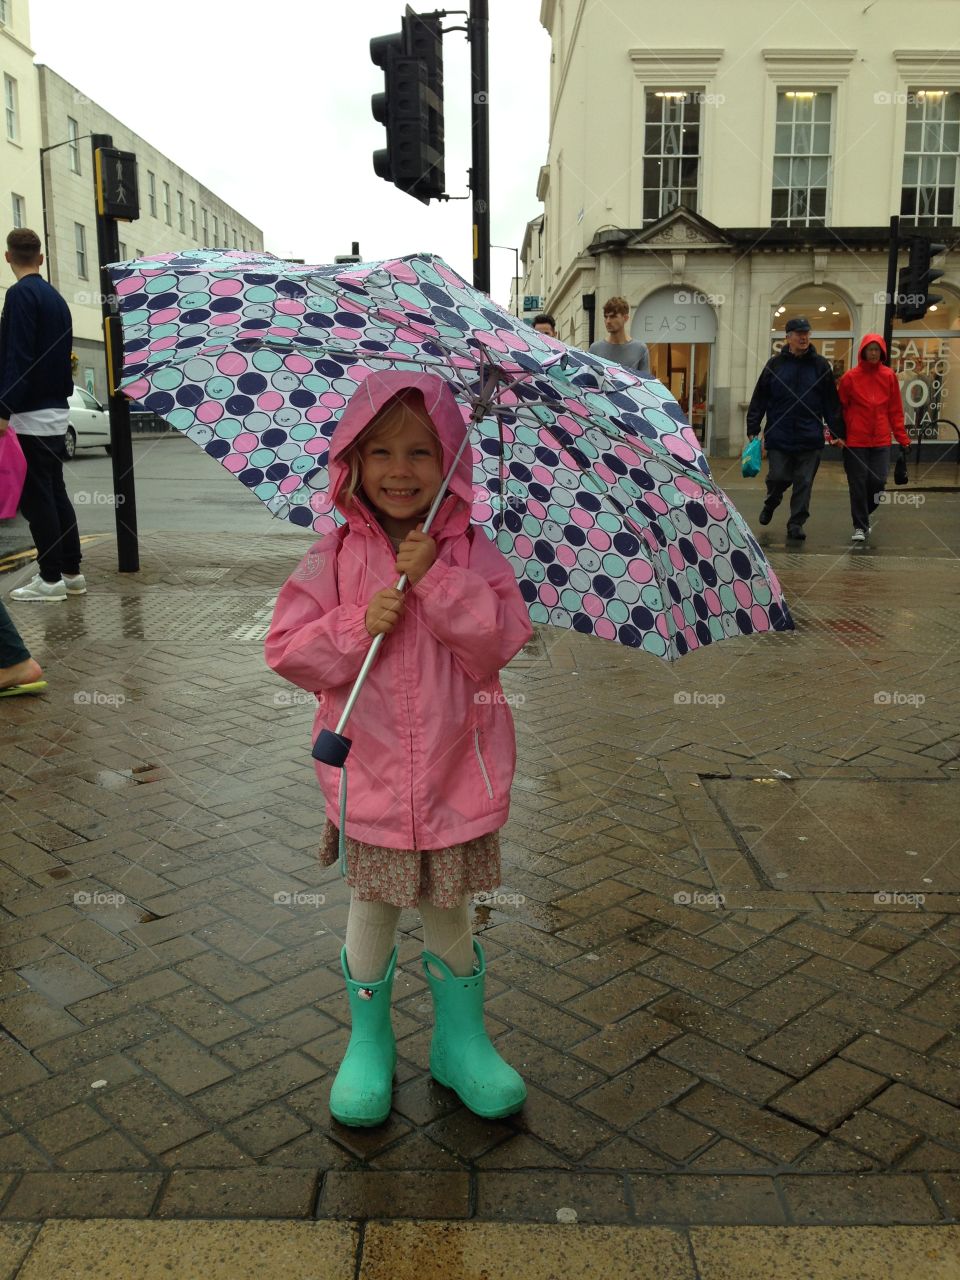 A happy girl in the rain under the umbrella